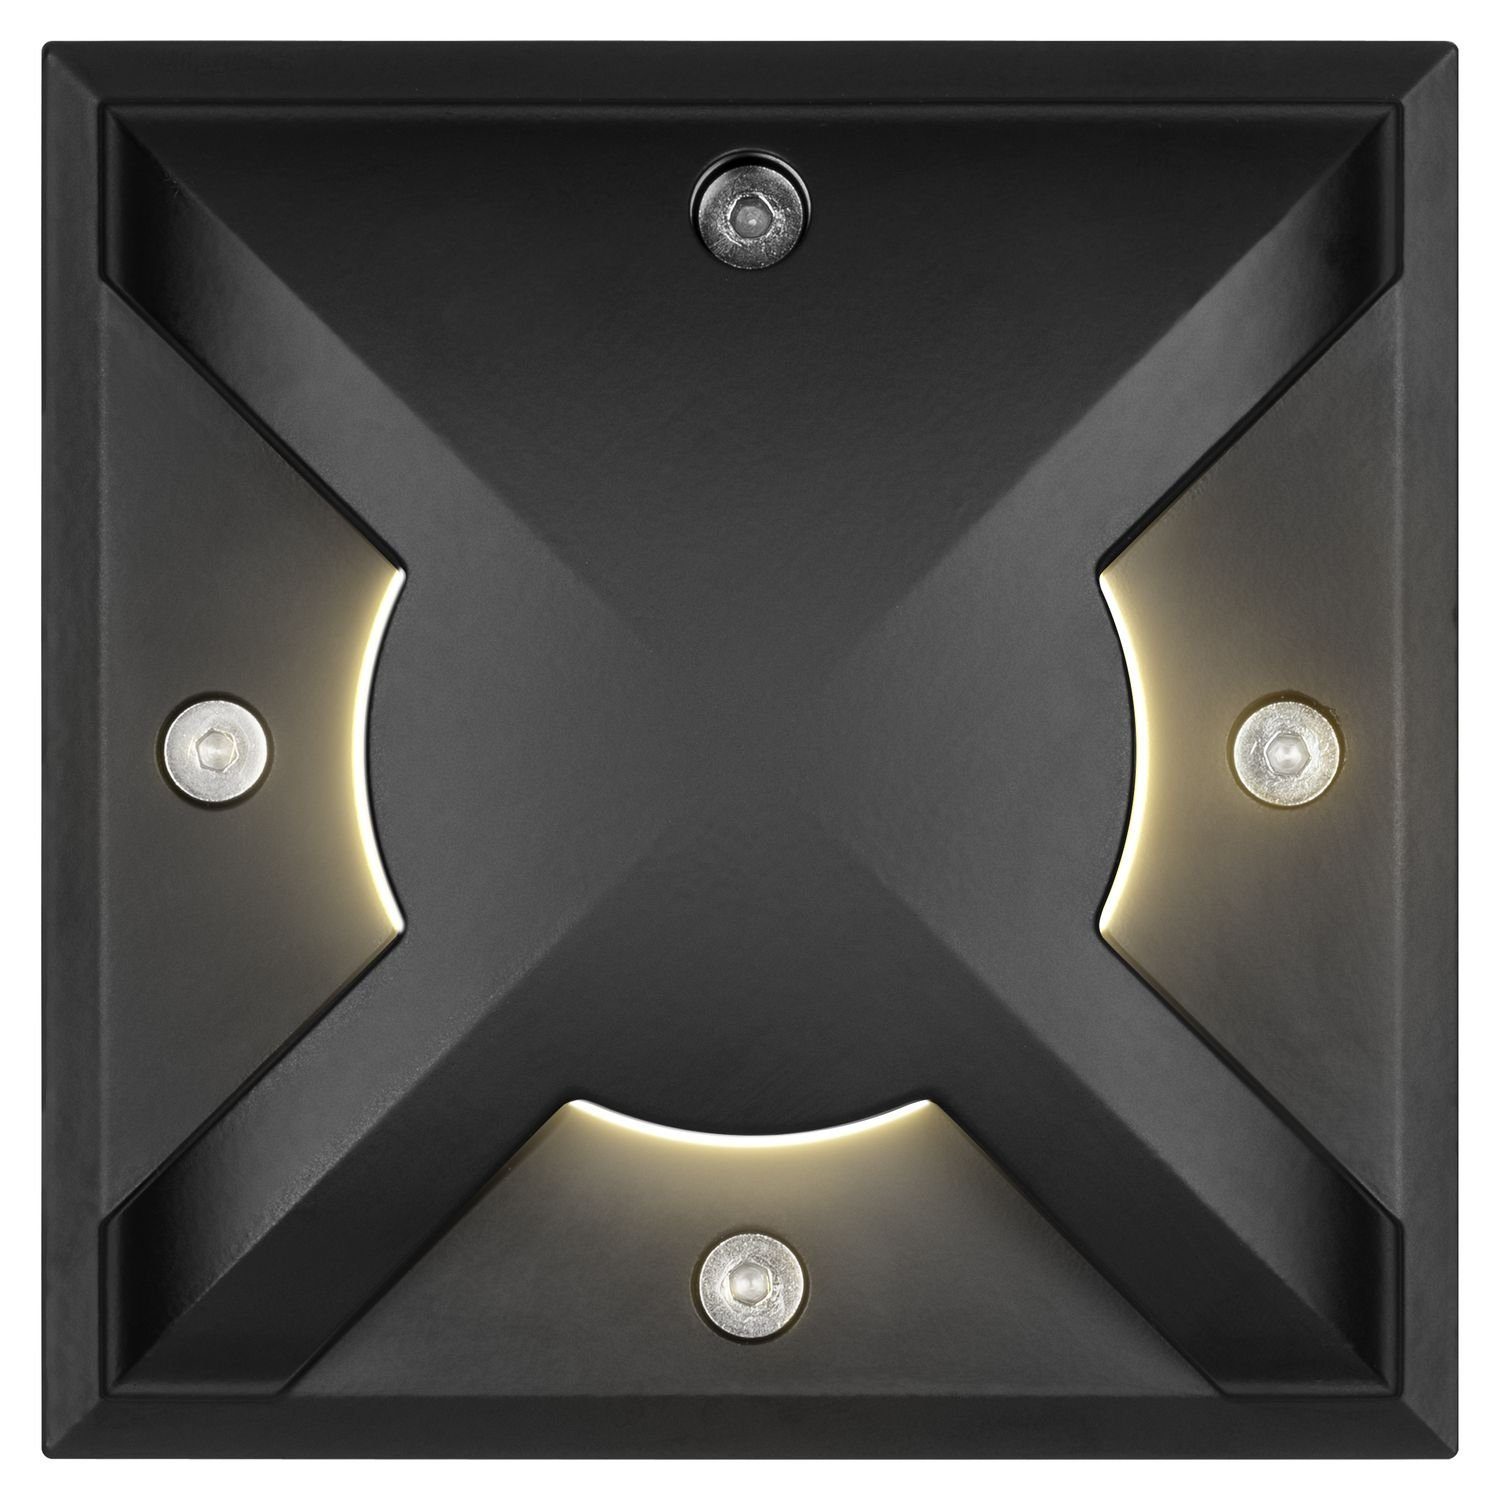 LED Bodeneinbaustrahler 7W LEDANDO warmwe Set LED Lichtauslässen - 3 schwarz mit Einbaustrahler -